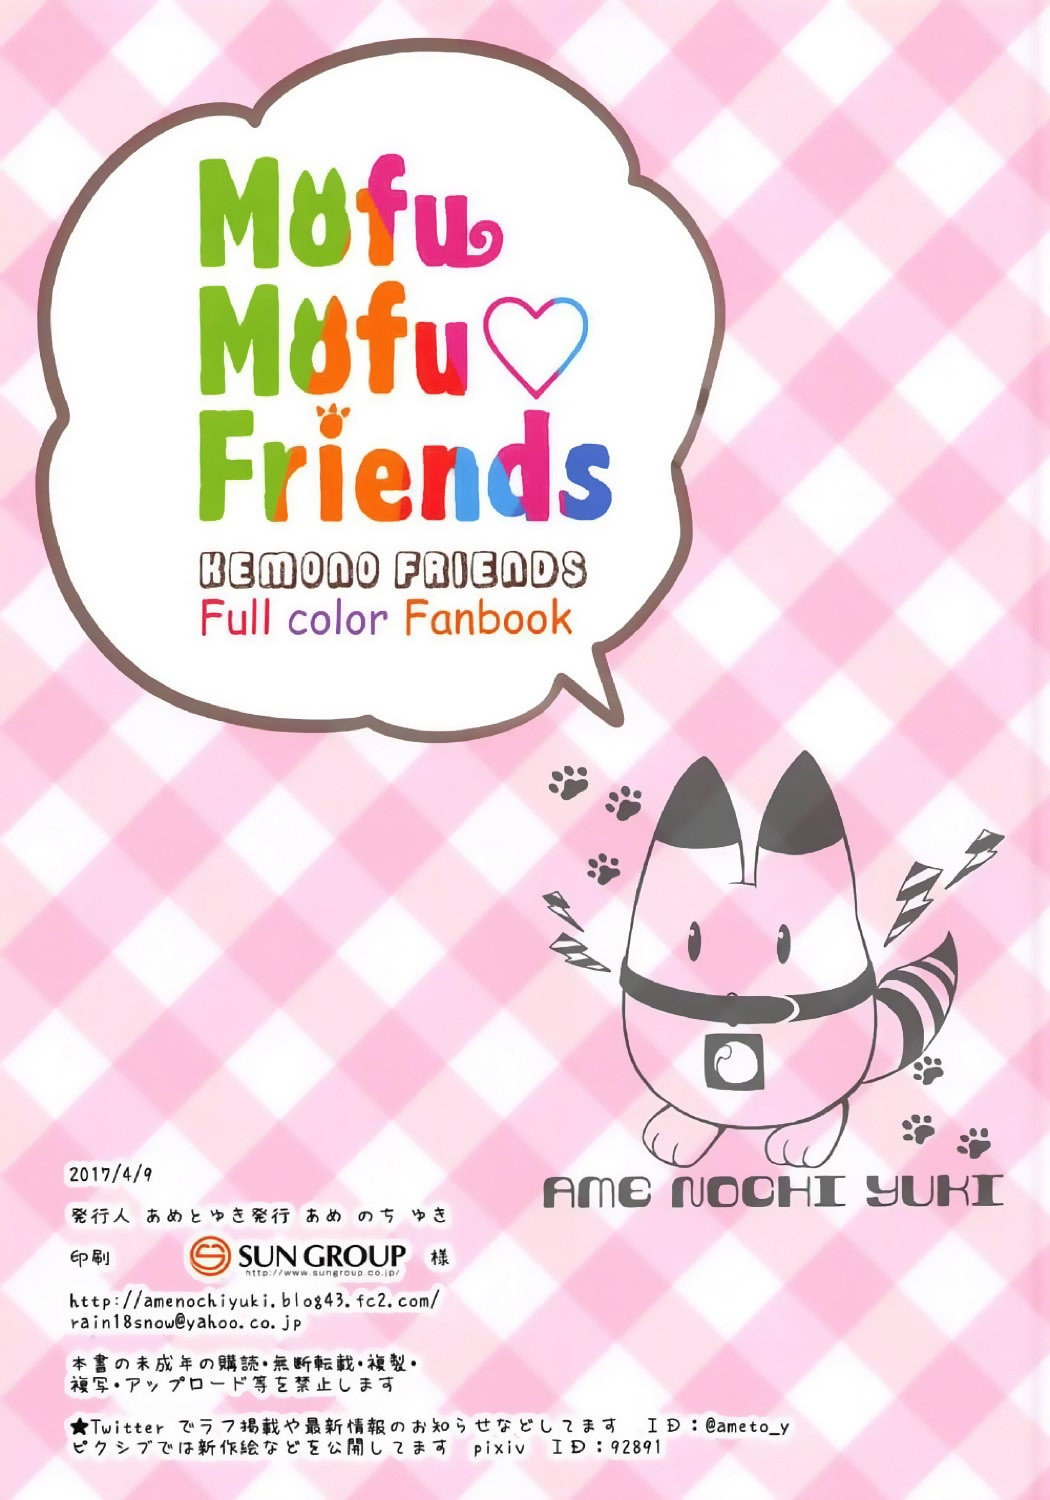 Mofu Mofu Friends (Kemono Friends)